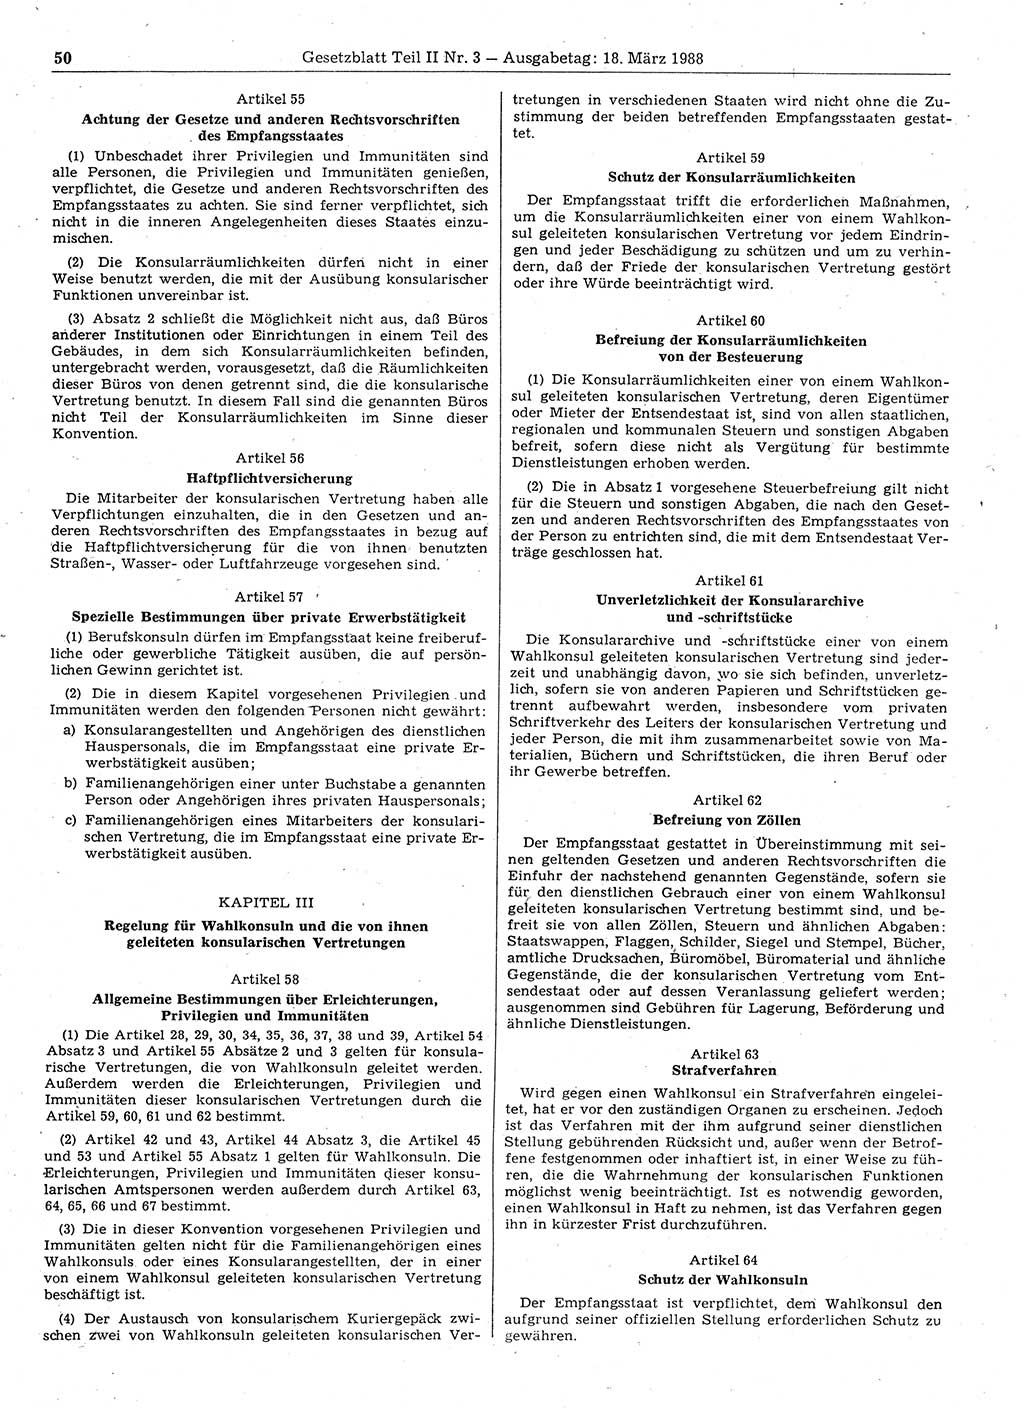 Gesetzblatt (GBl.) der Deutschen Demokratischen Republik (DDR) Teil ⅠⅠ 1988, Seite 50 (GBl. DDR ⅠⅠ 1988, S. 50)